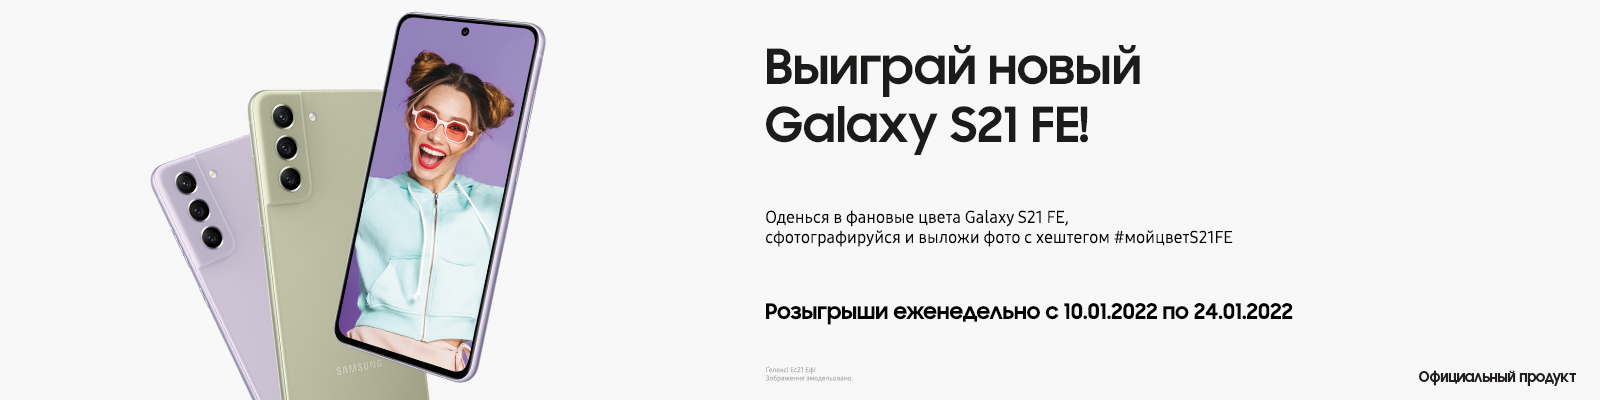 Выиграй новый Galaxy S21 FE